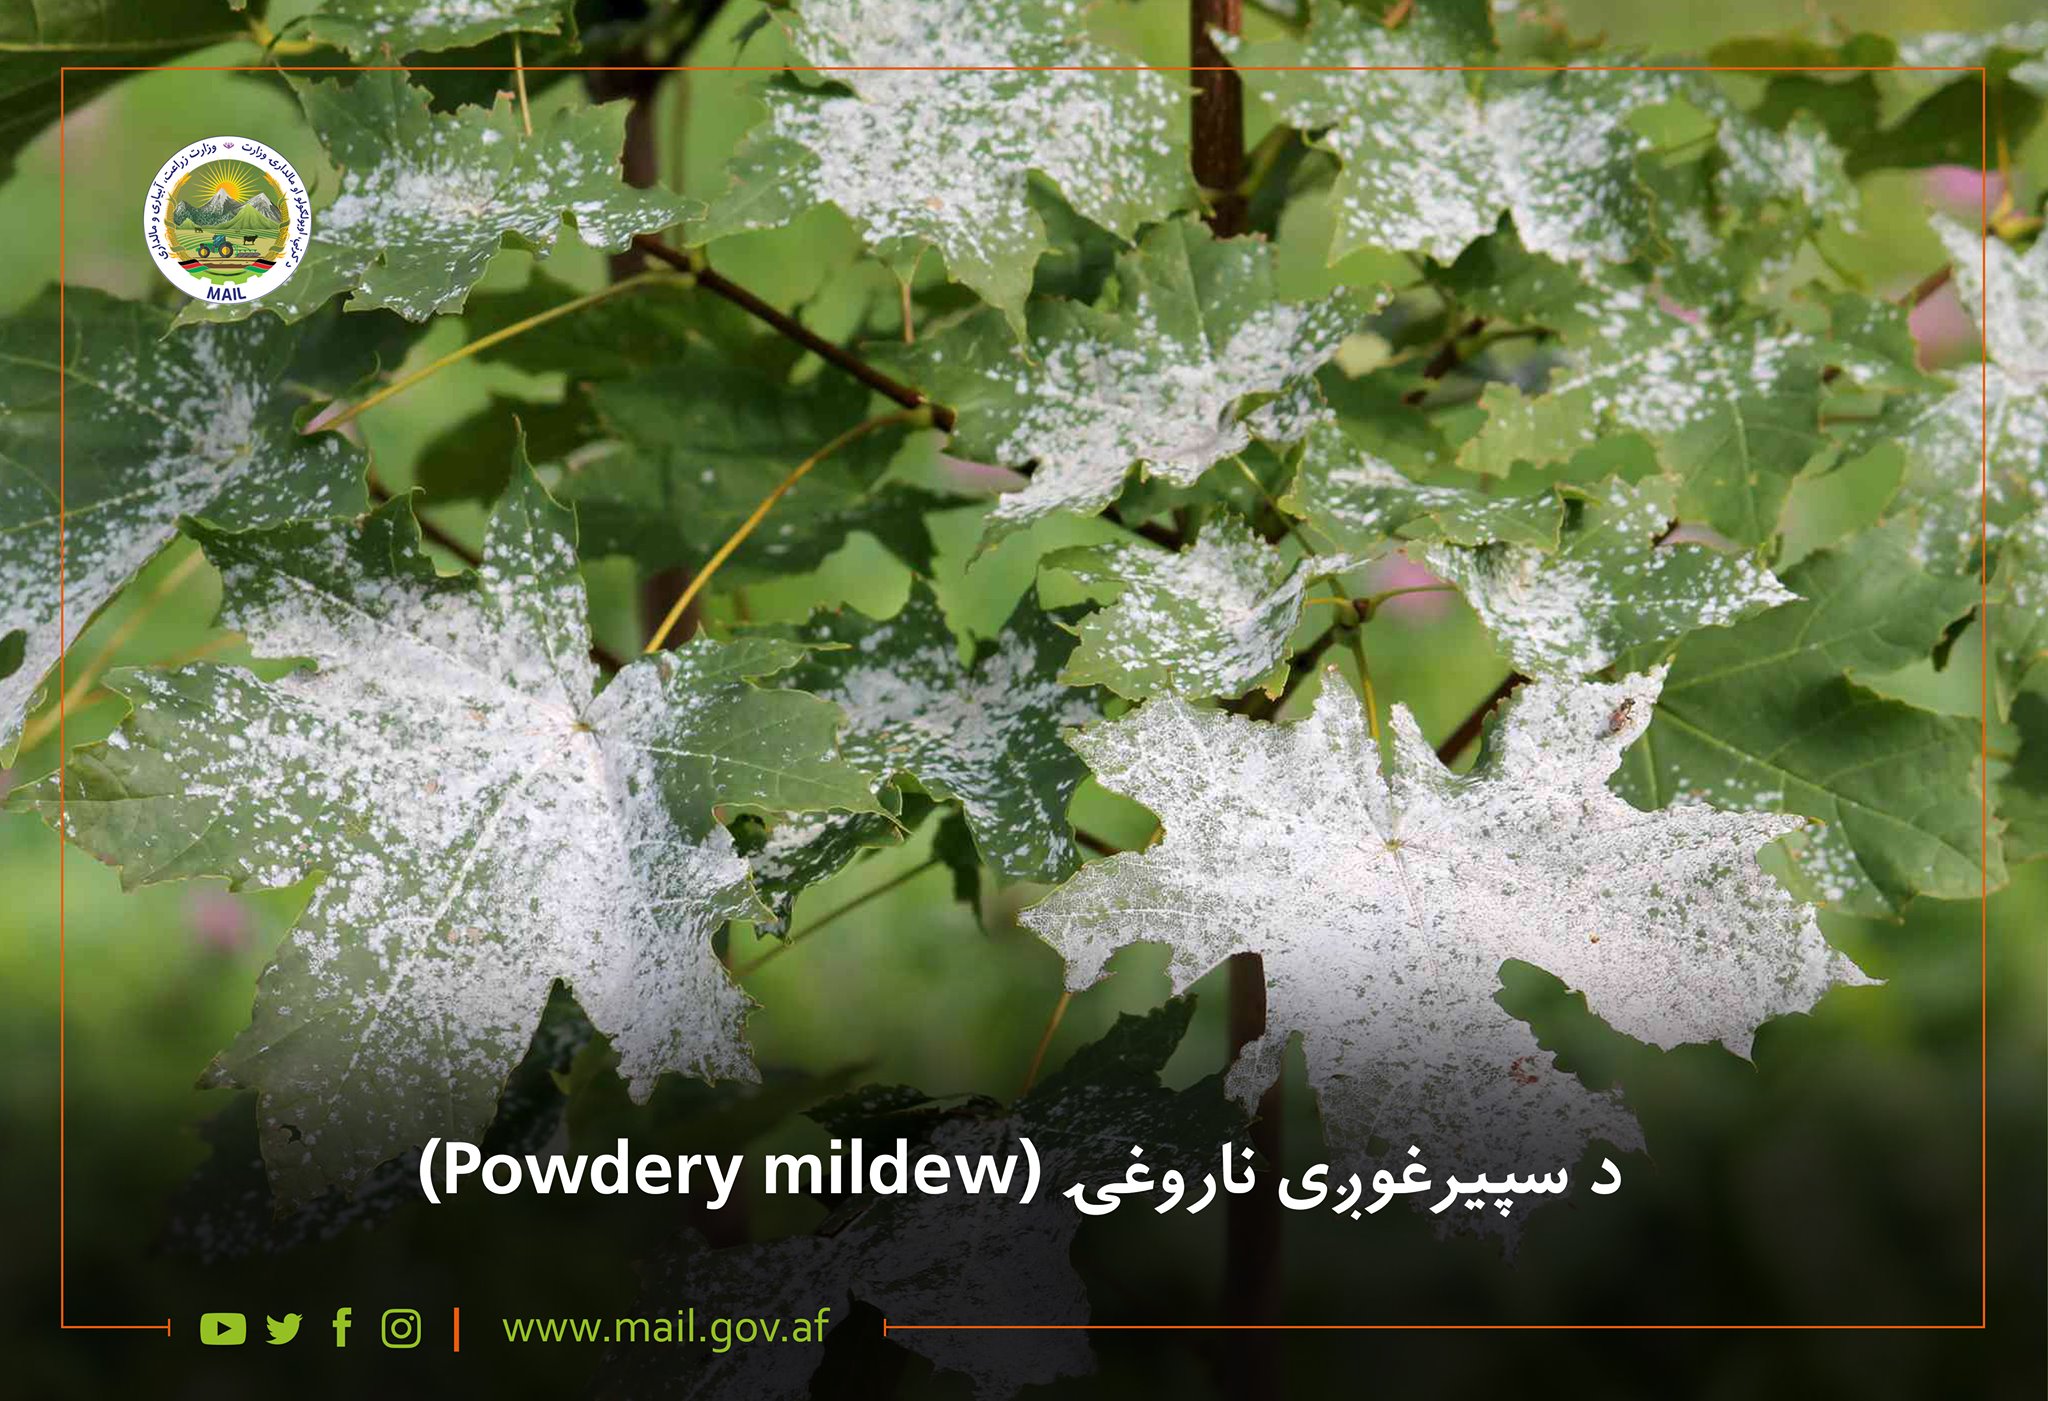 د سپیرغوږی ناروغۍ (Powdery mildew)